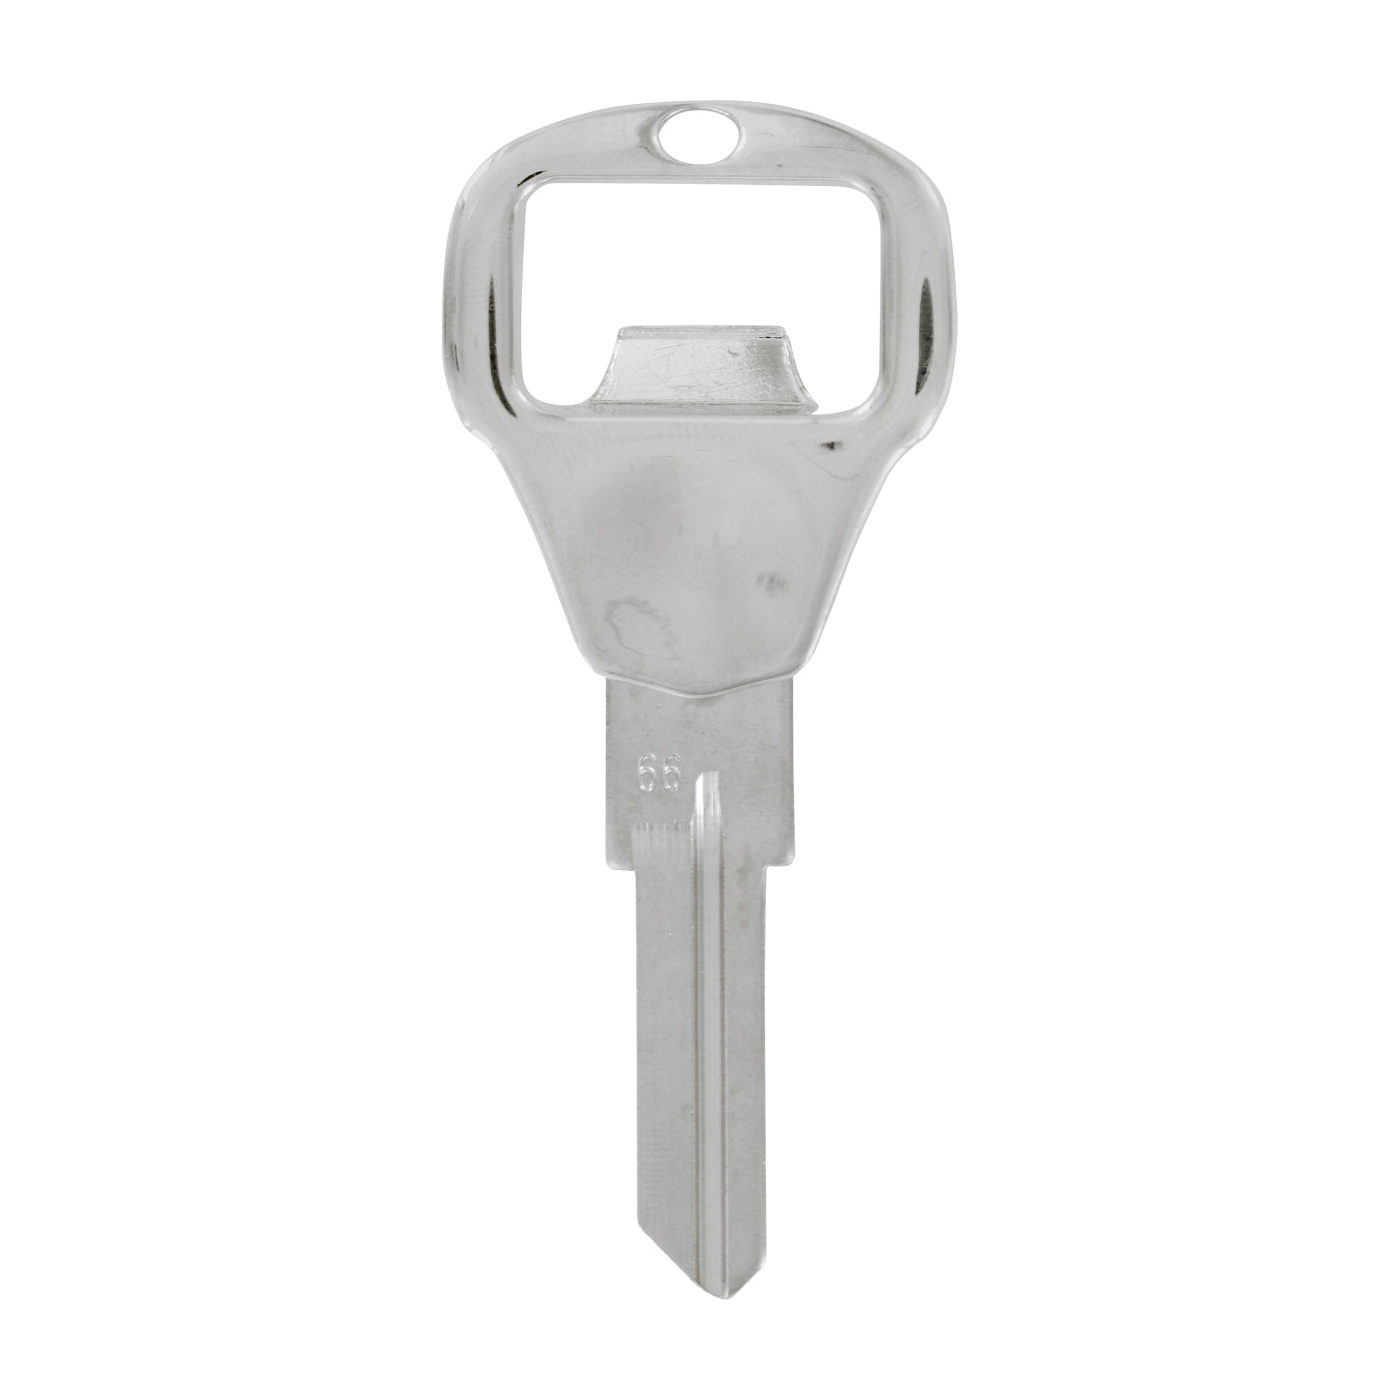 Hillman 87062 Bottle Opener Key, Metal, Chrome-Plated, For: Kwikset Brand Locks